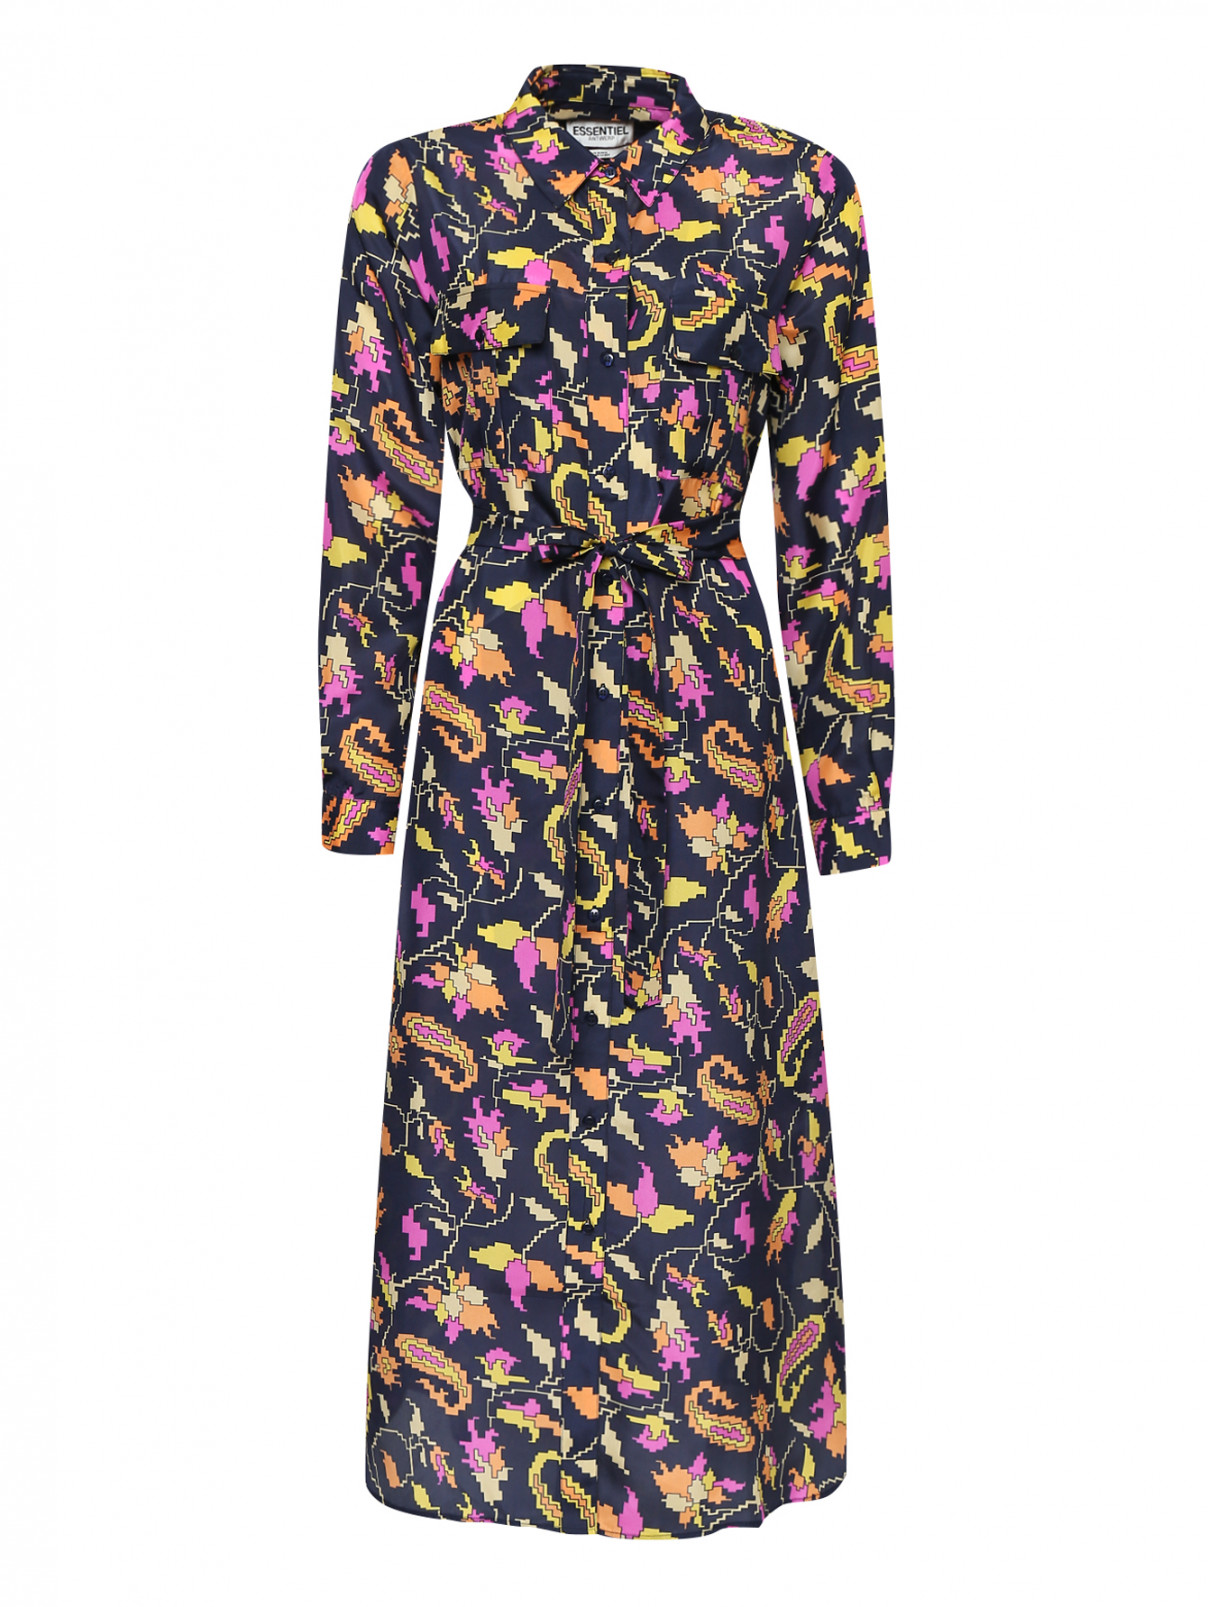 Платье из шелка, с геометричным узором Essentiel Antwerp  –  Общий вид  – Цвет:  Мультиколор